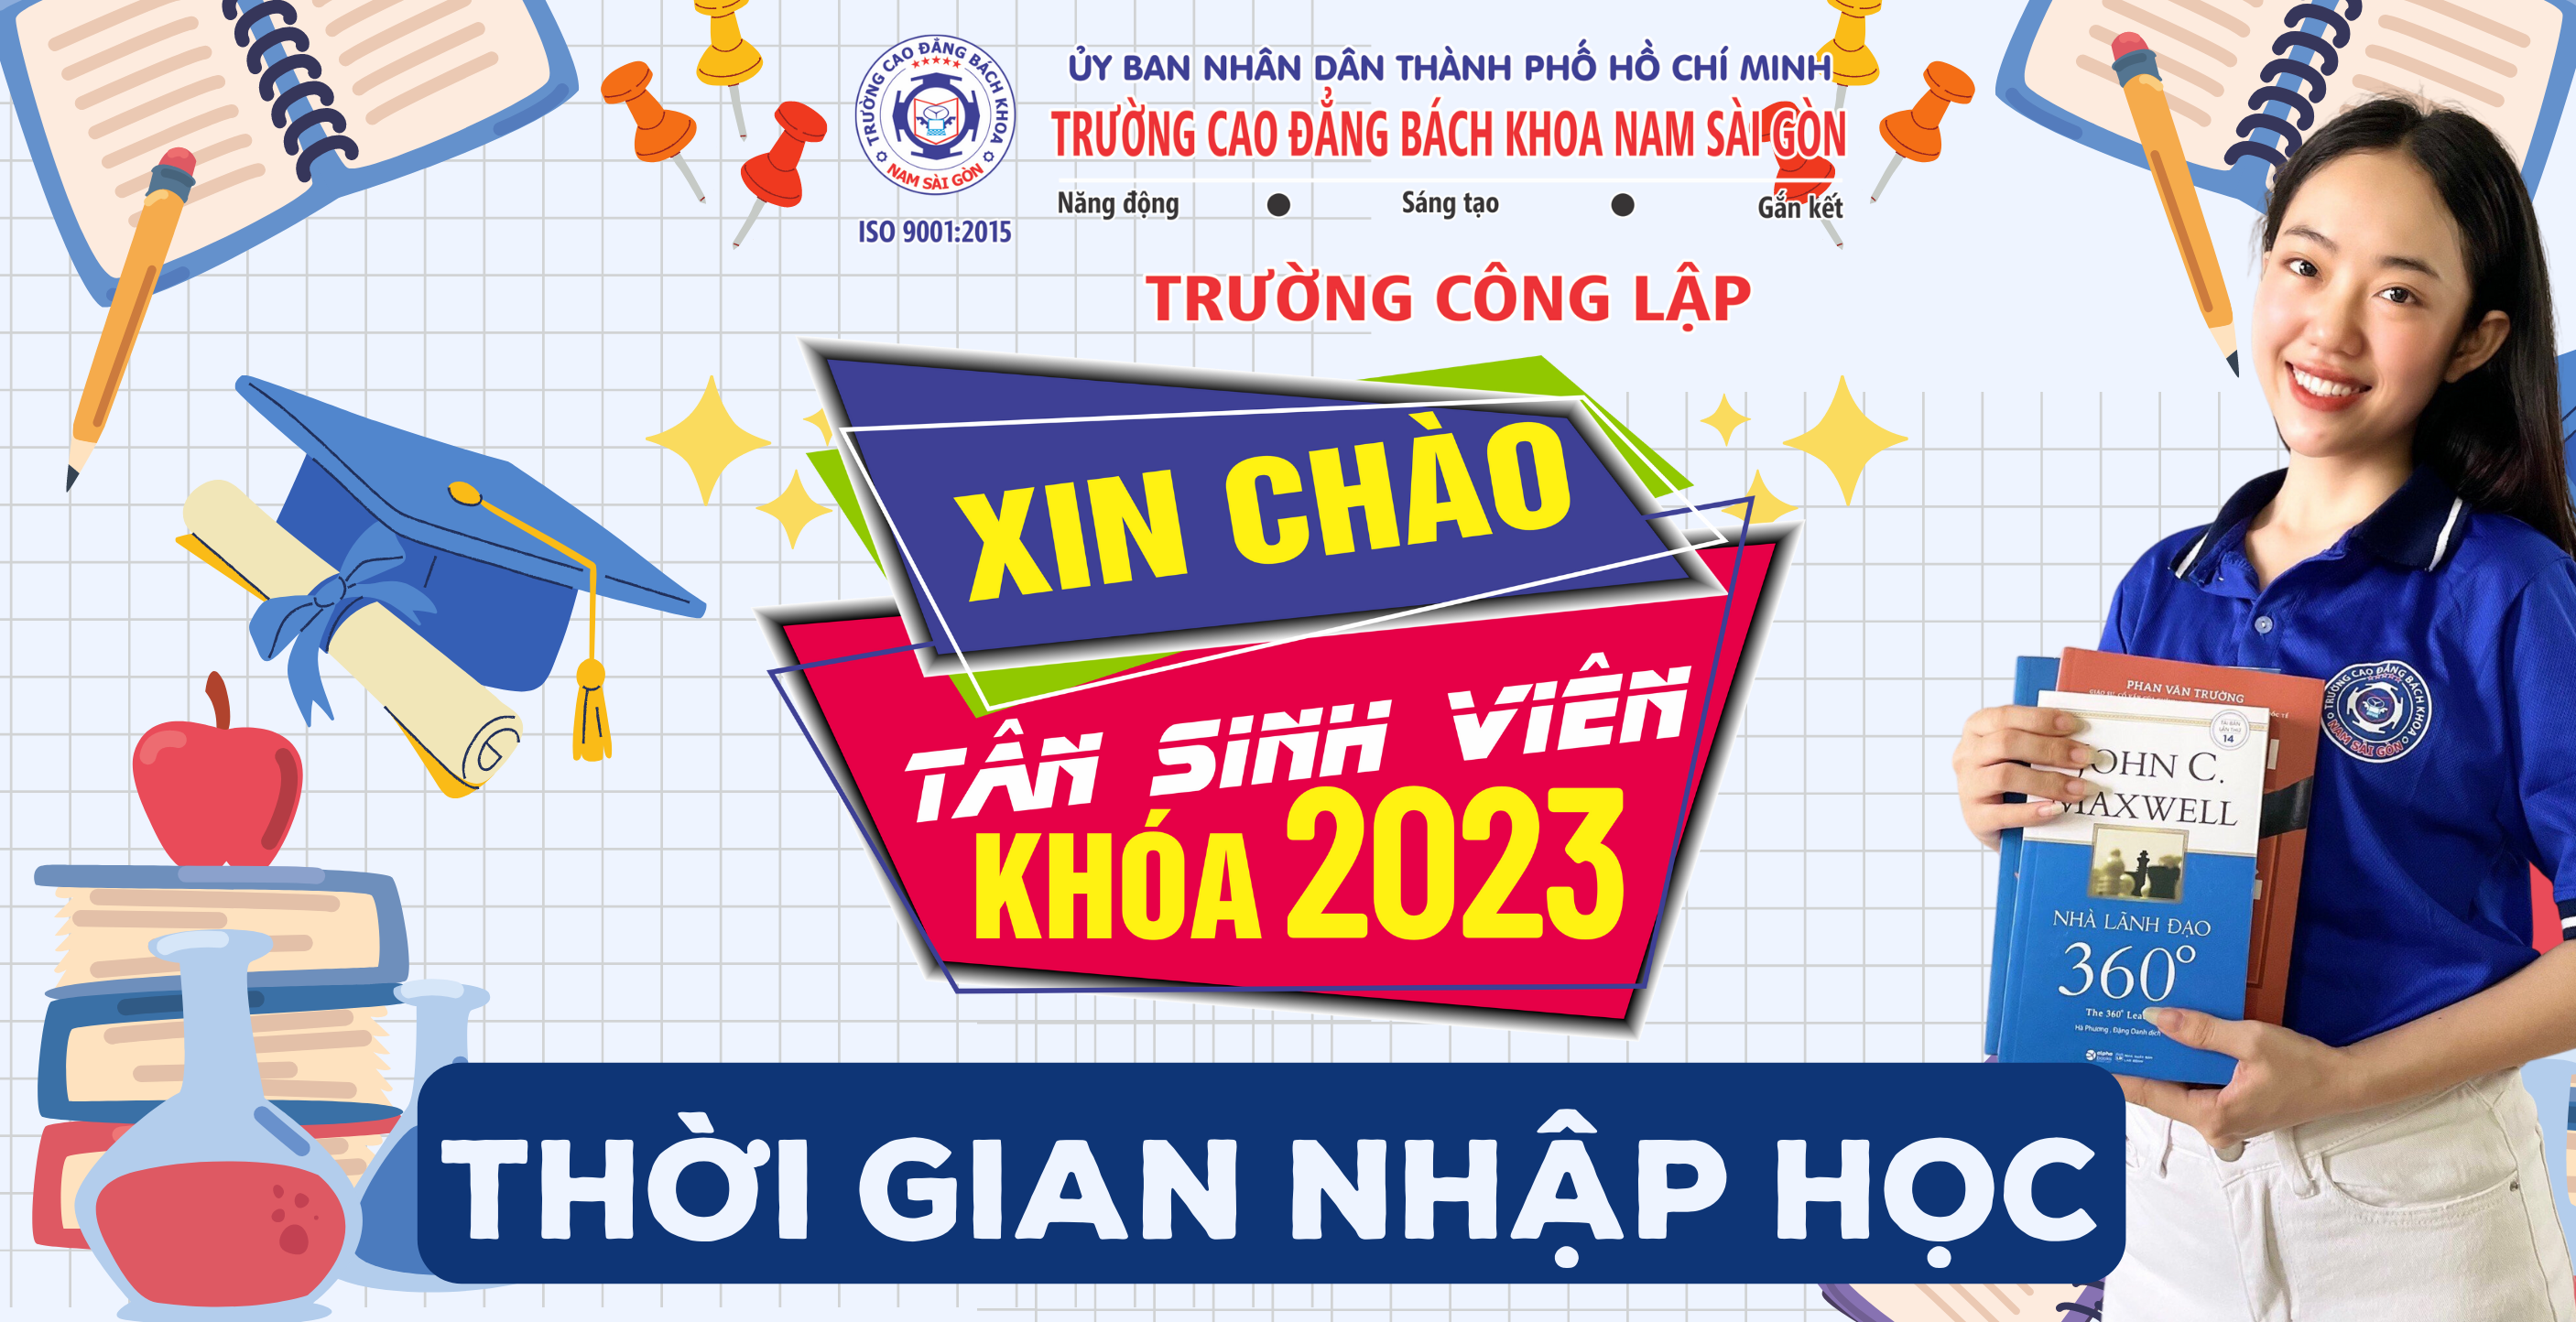 Thoi Gian Nhap Hoc